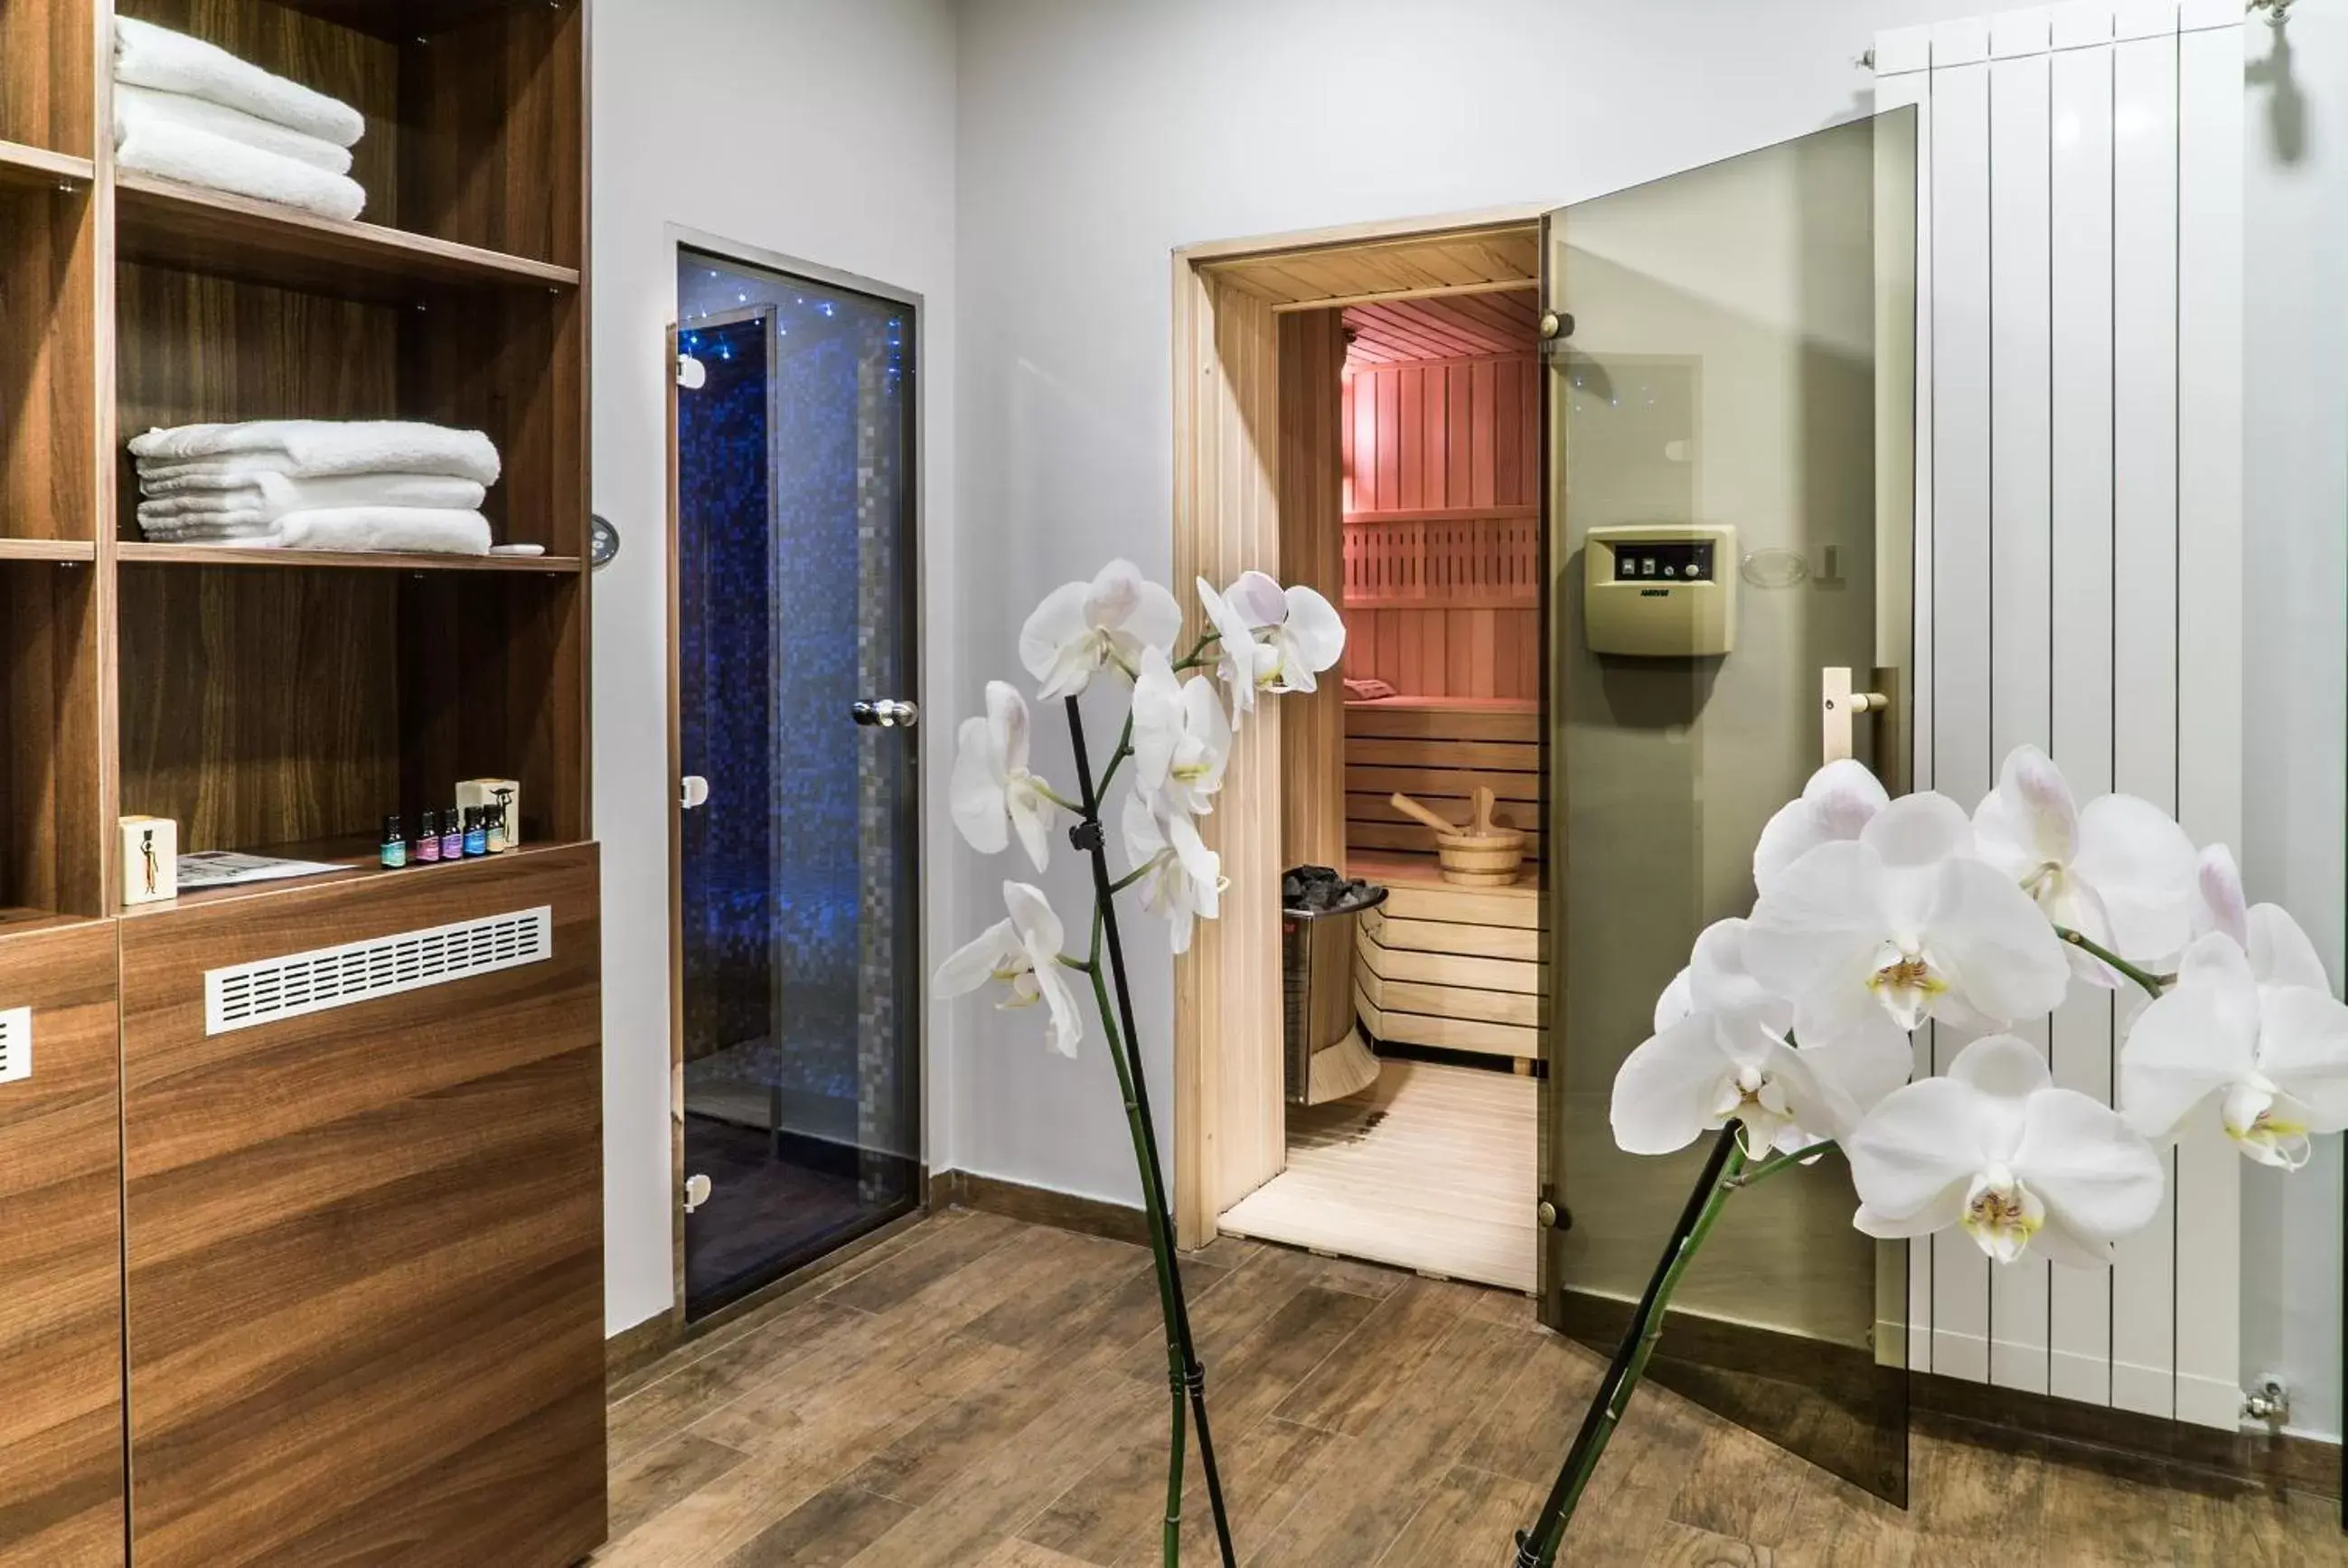 Area and facilities, Bathroom in Best Western Premier Natalija Residence